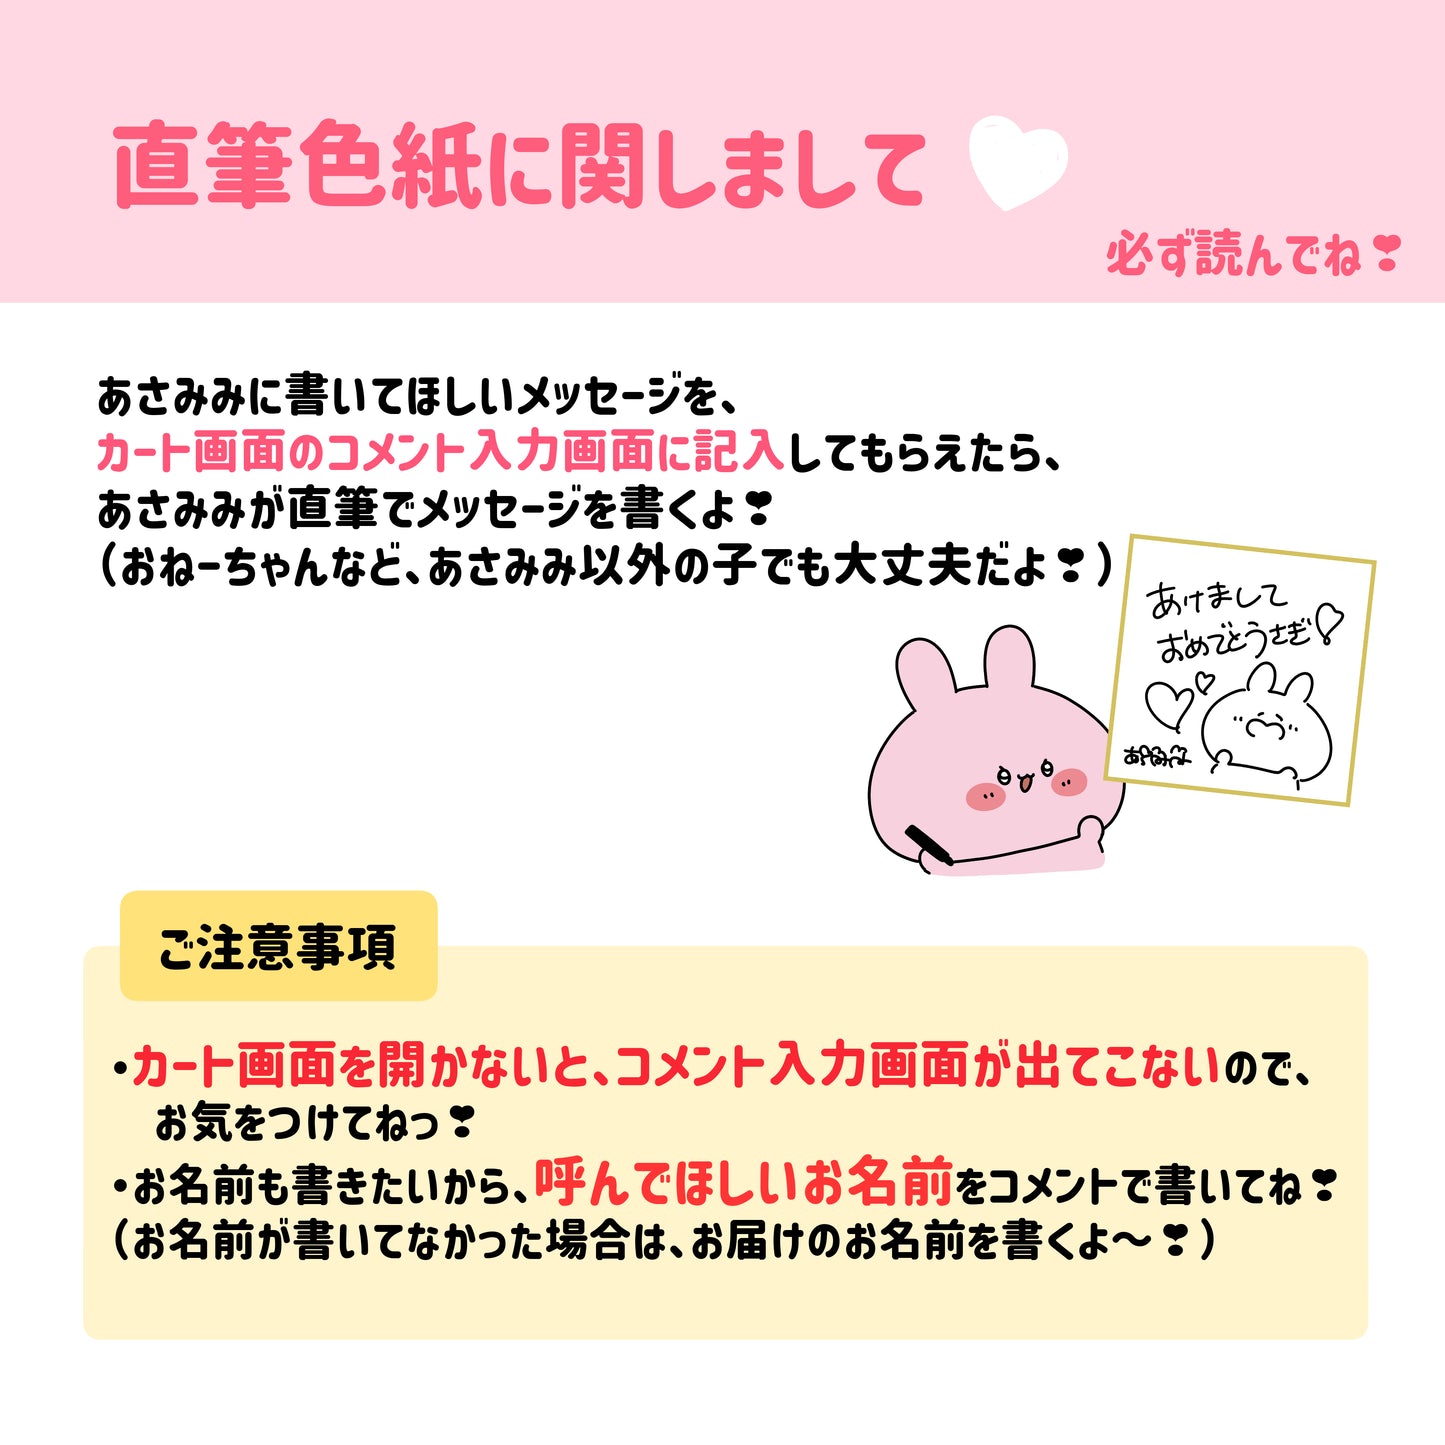 【あさみみちゃん】ASAMIMI HAPPY BAG 2024 （¥10,000）【1月中旬発送】